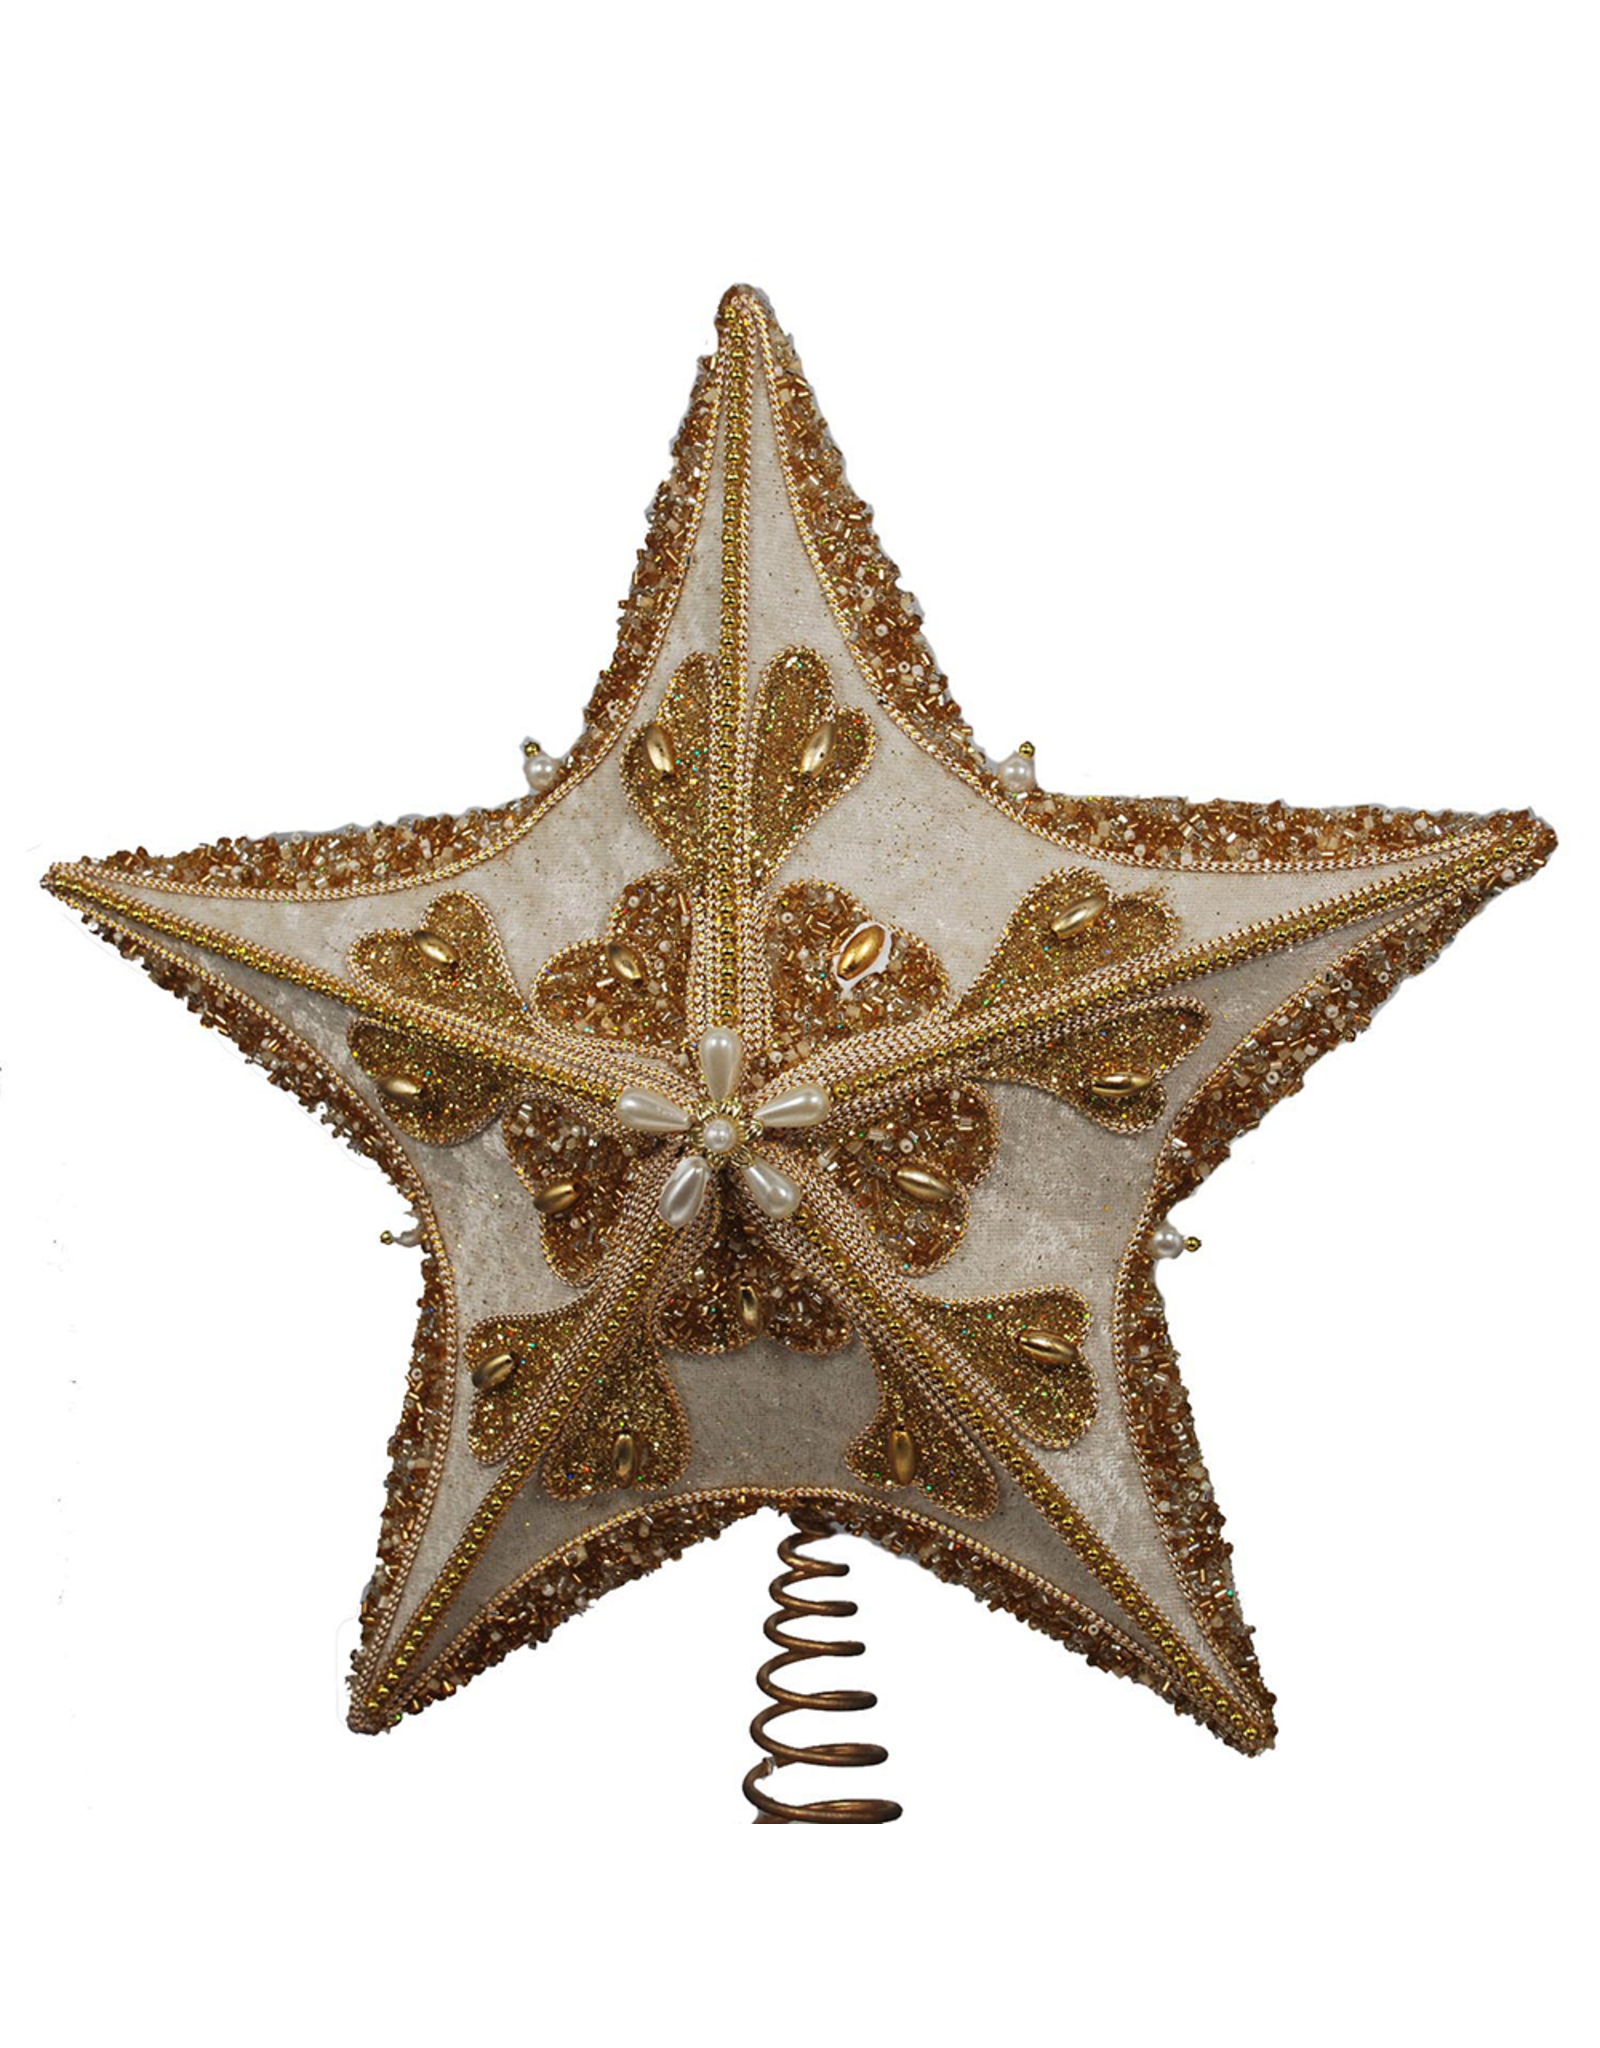 Kurt Adler Christmas Star Tree Topper Ivory Gold w Glitter Beading and Cording